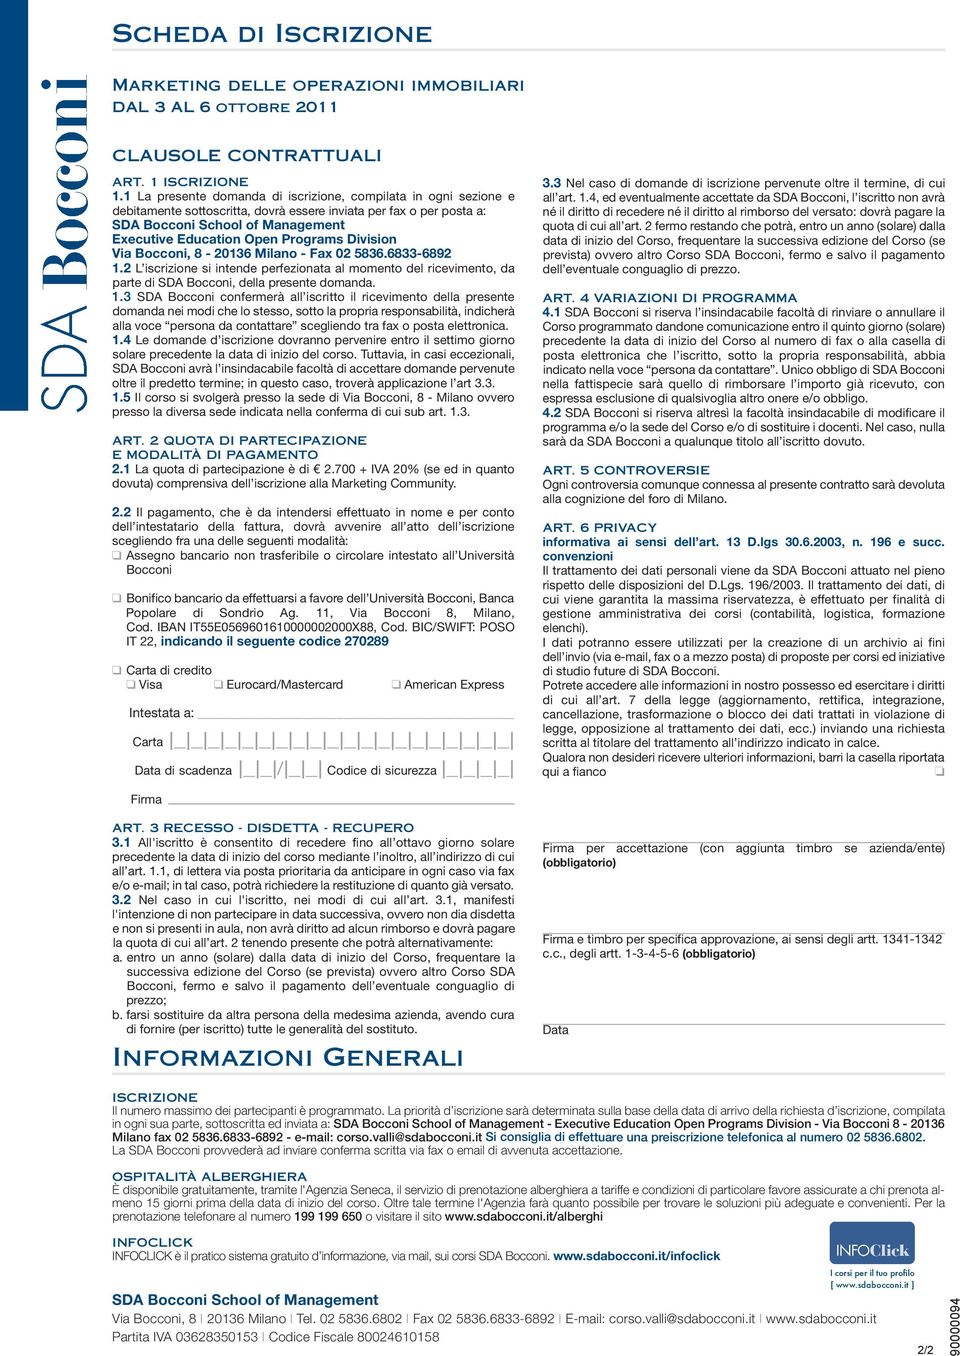 Programs Division Via Bocconi, 8-20136 Milano - Fax 02 5836.6833-6892 1.